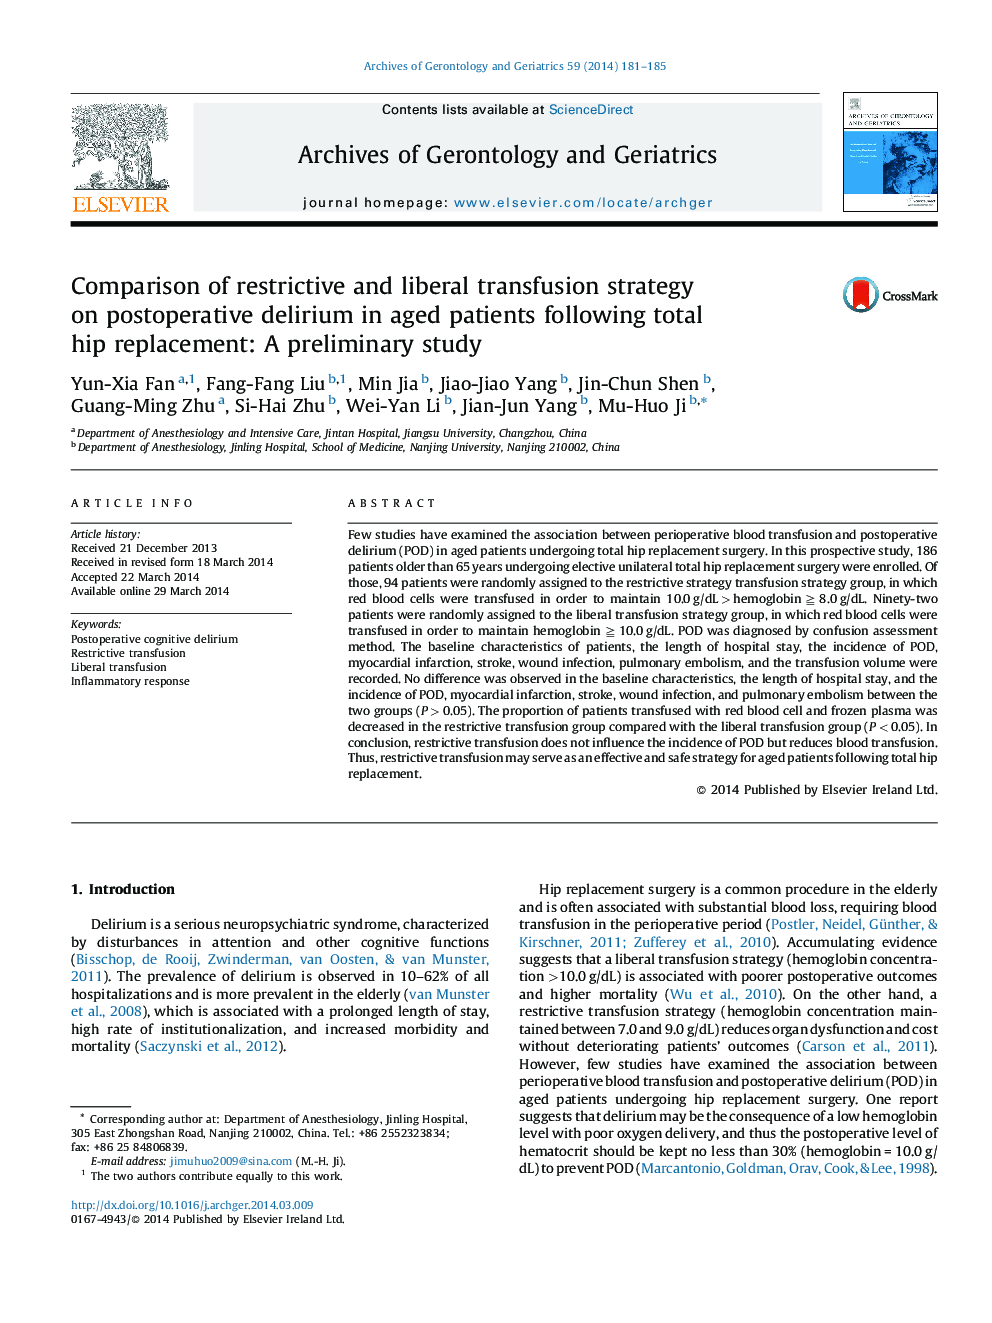 مقایسه استراتیژی تجویز محدود و لیبرال پس از جراحی در بیماران سالم پس از جراحی کامل جراحی: یک مطالعه مقدماتی 